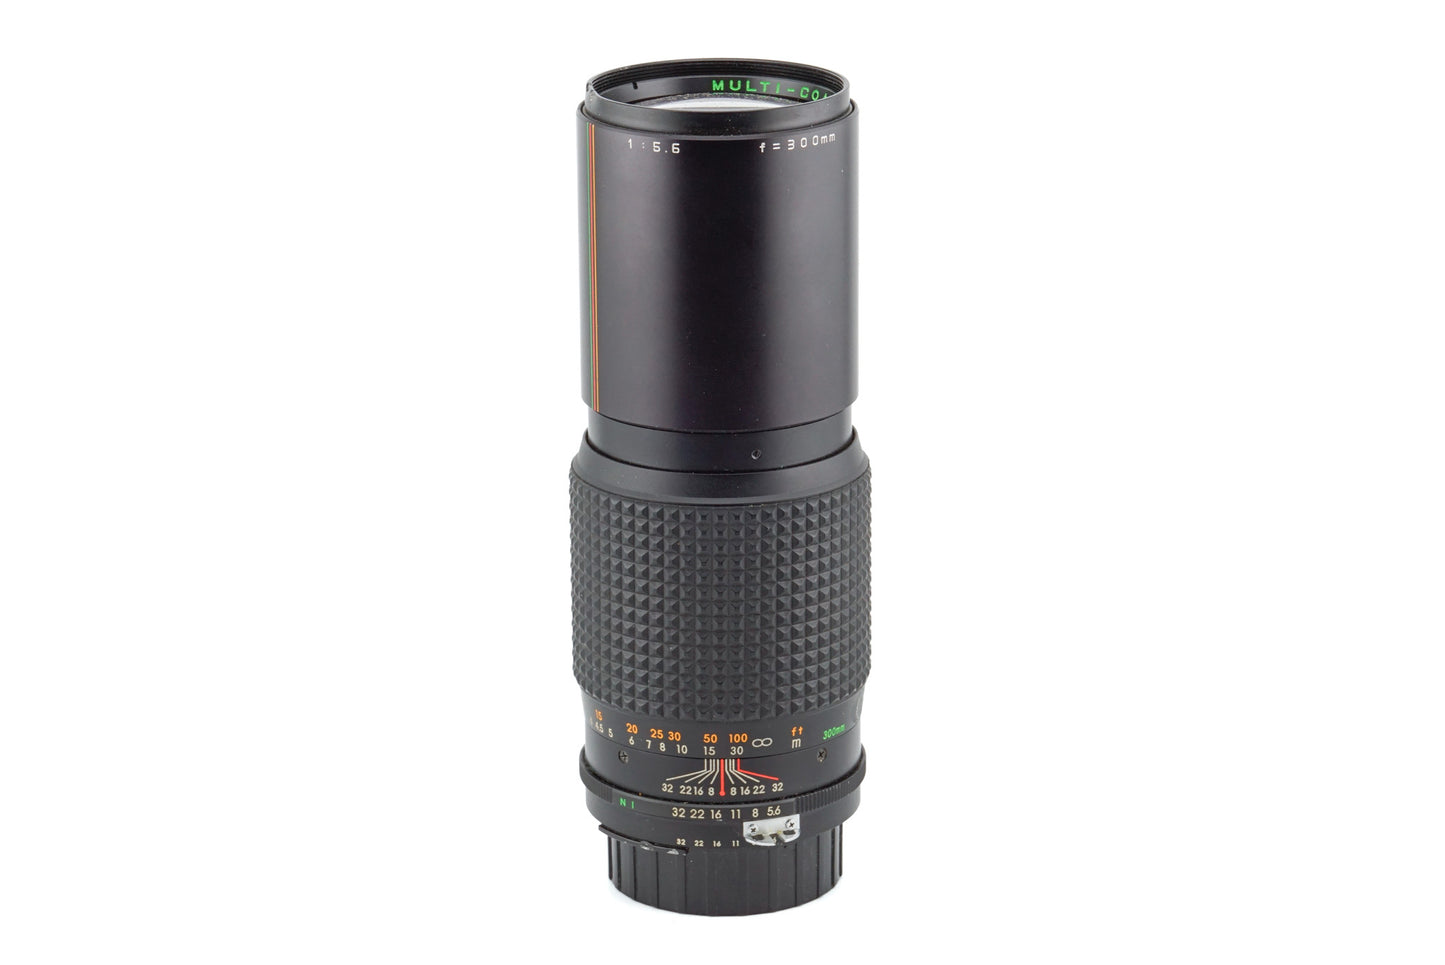 Makinon 300mm f5.6 Auto MC - Lens